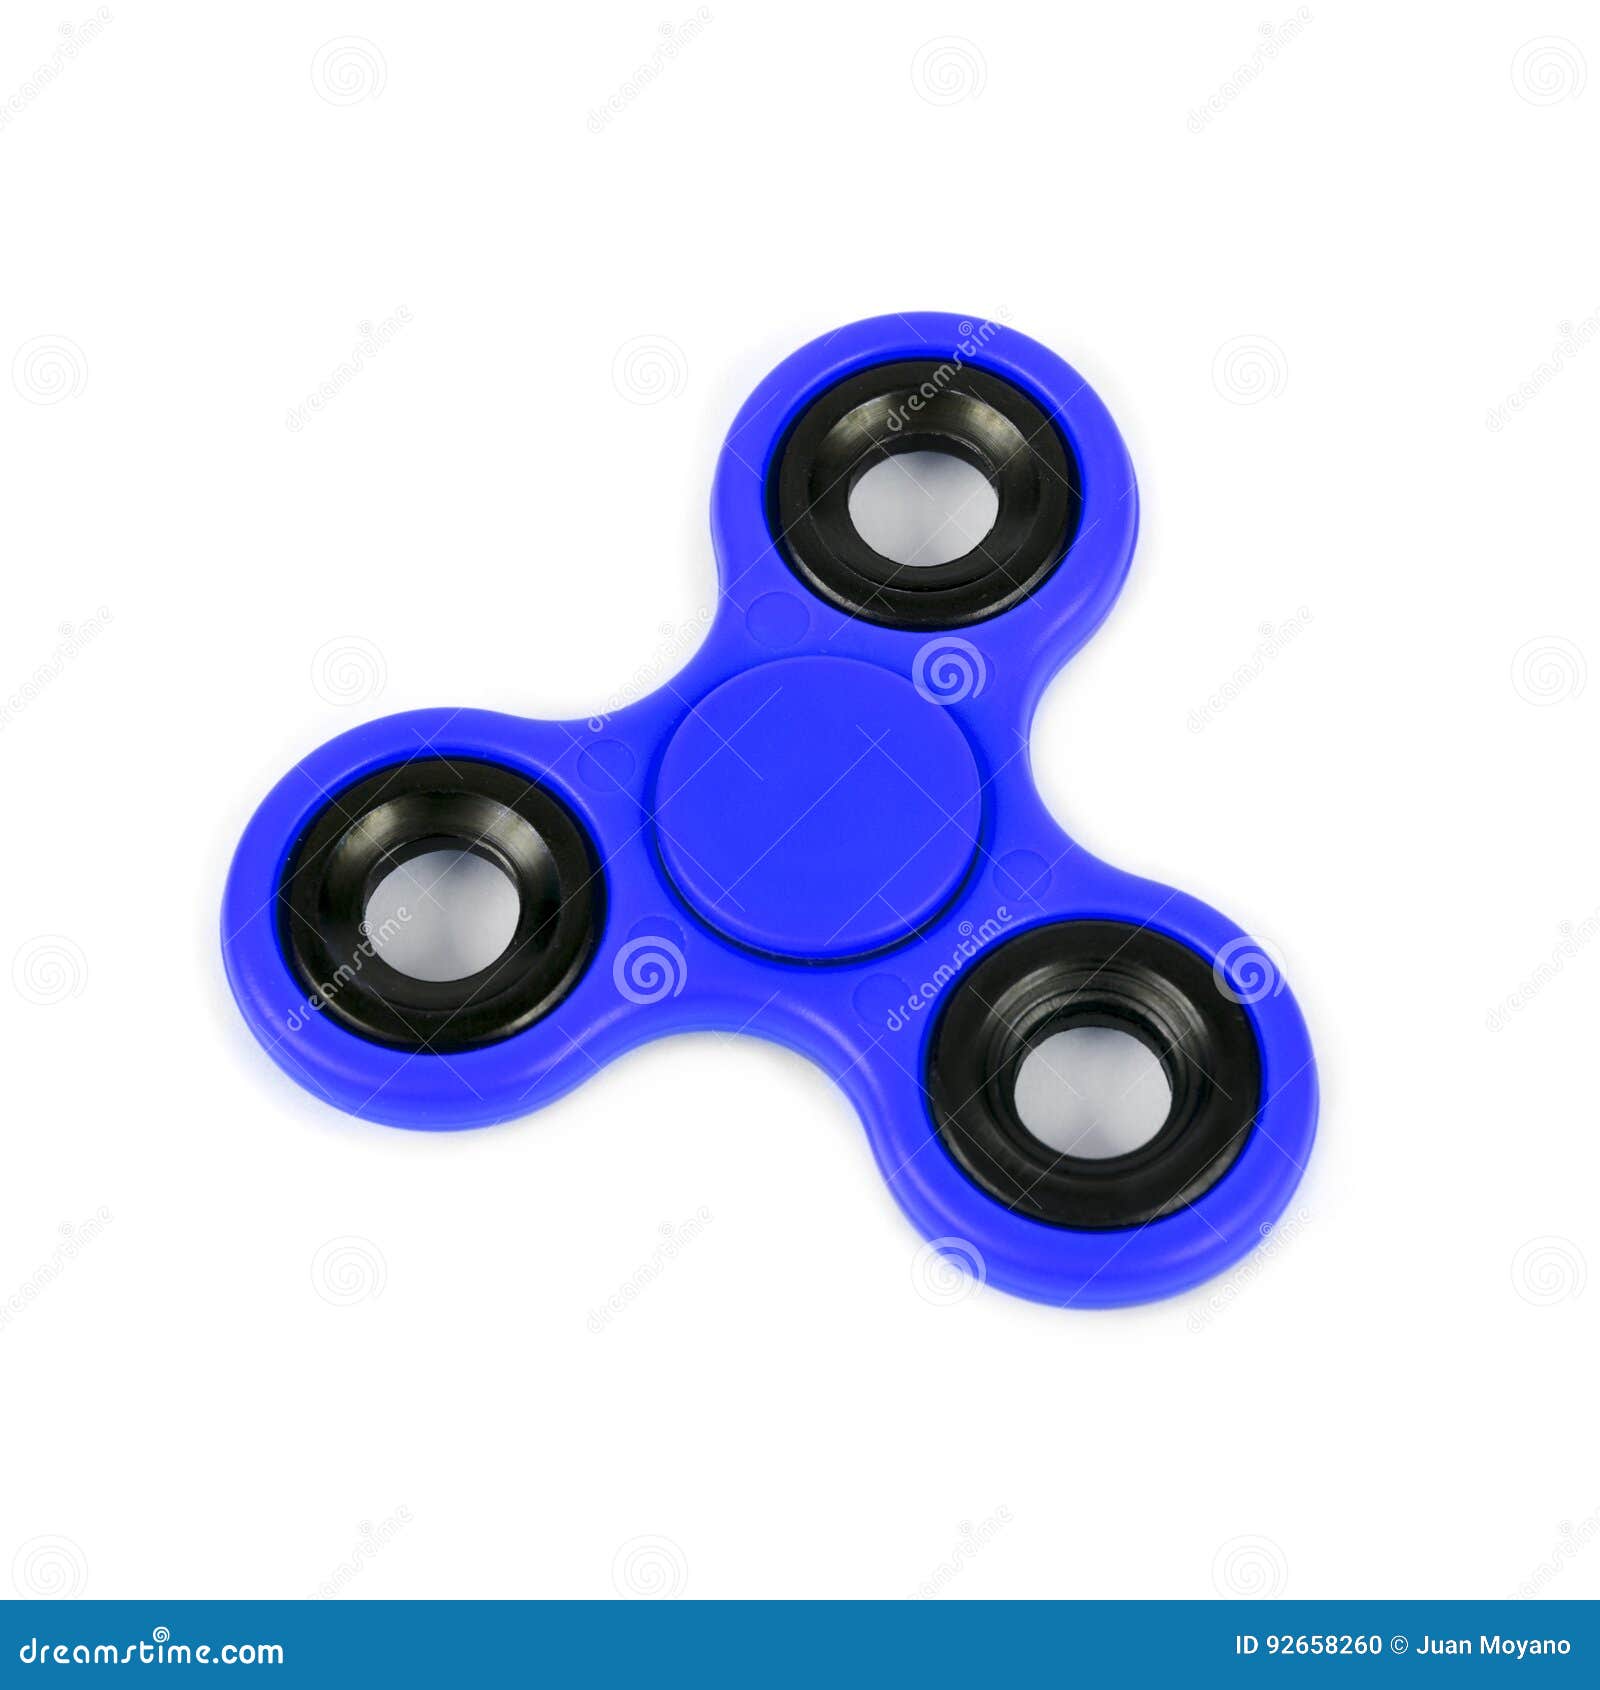 blue fidget spinner